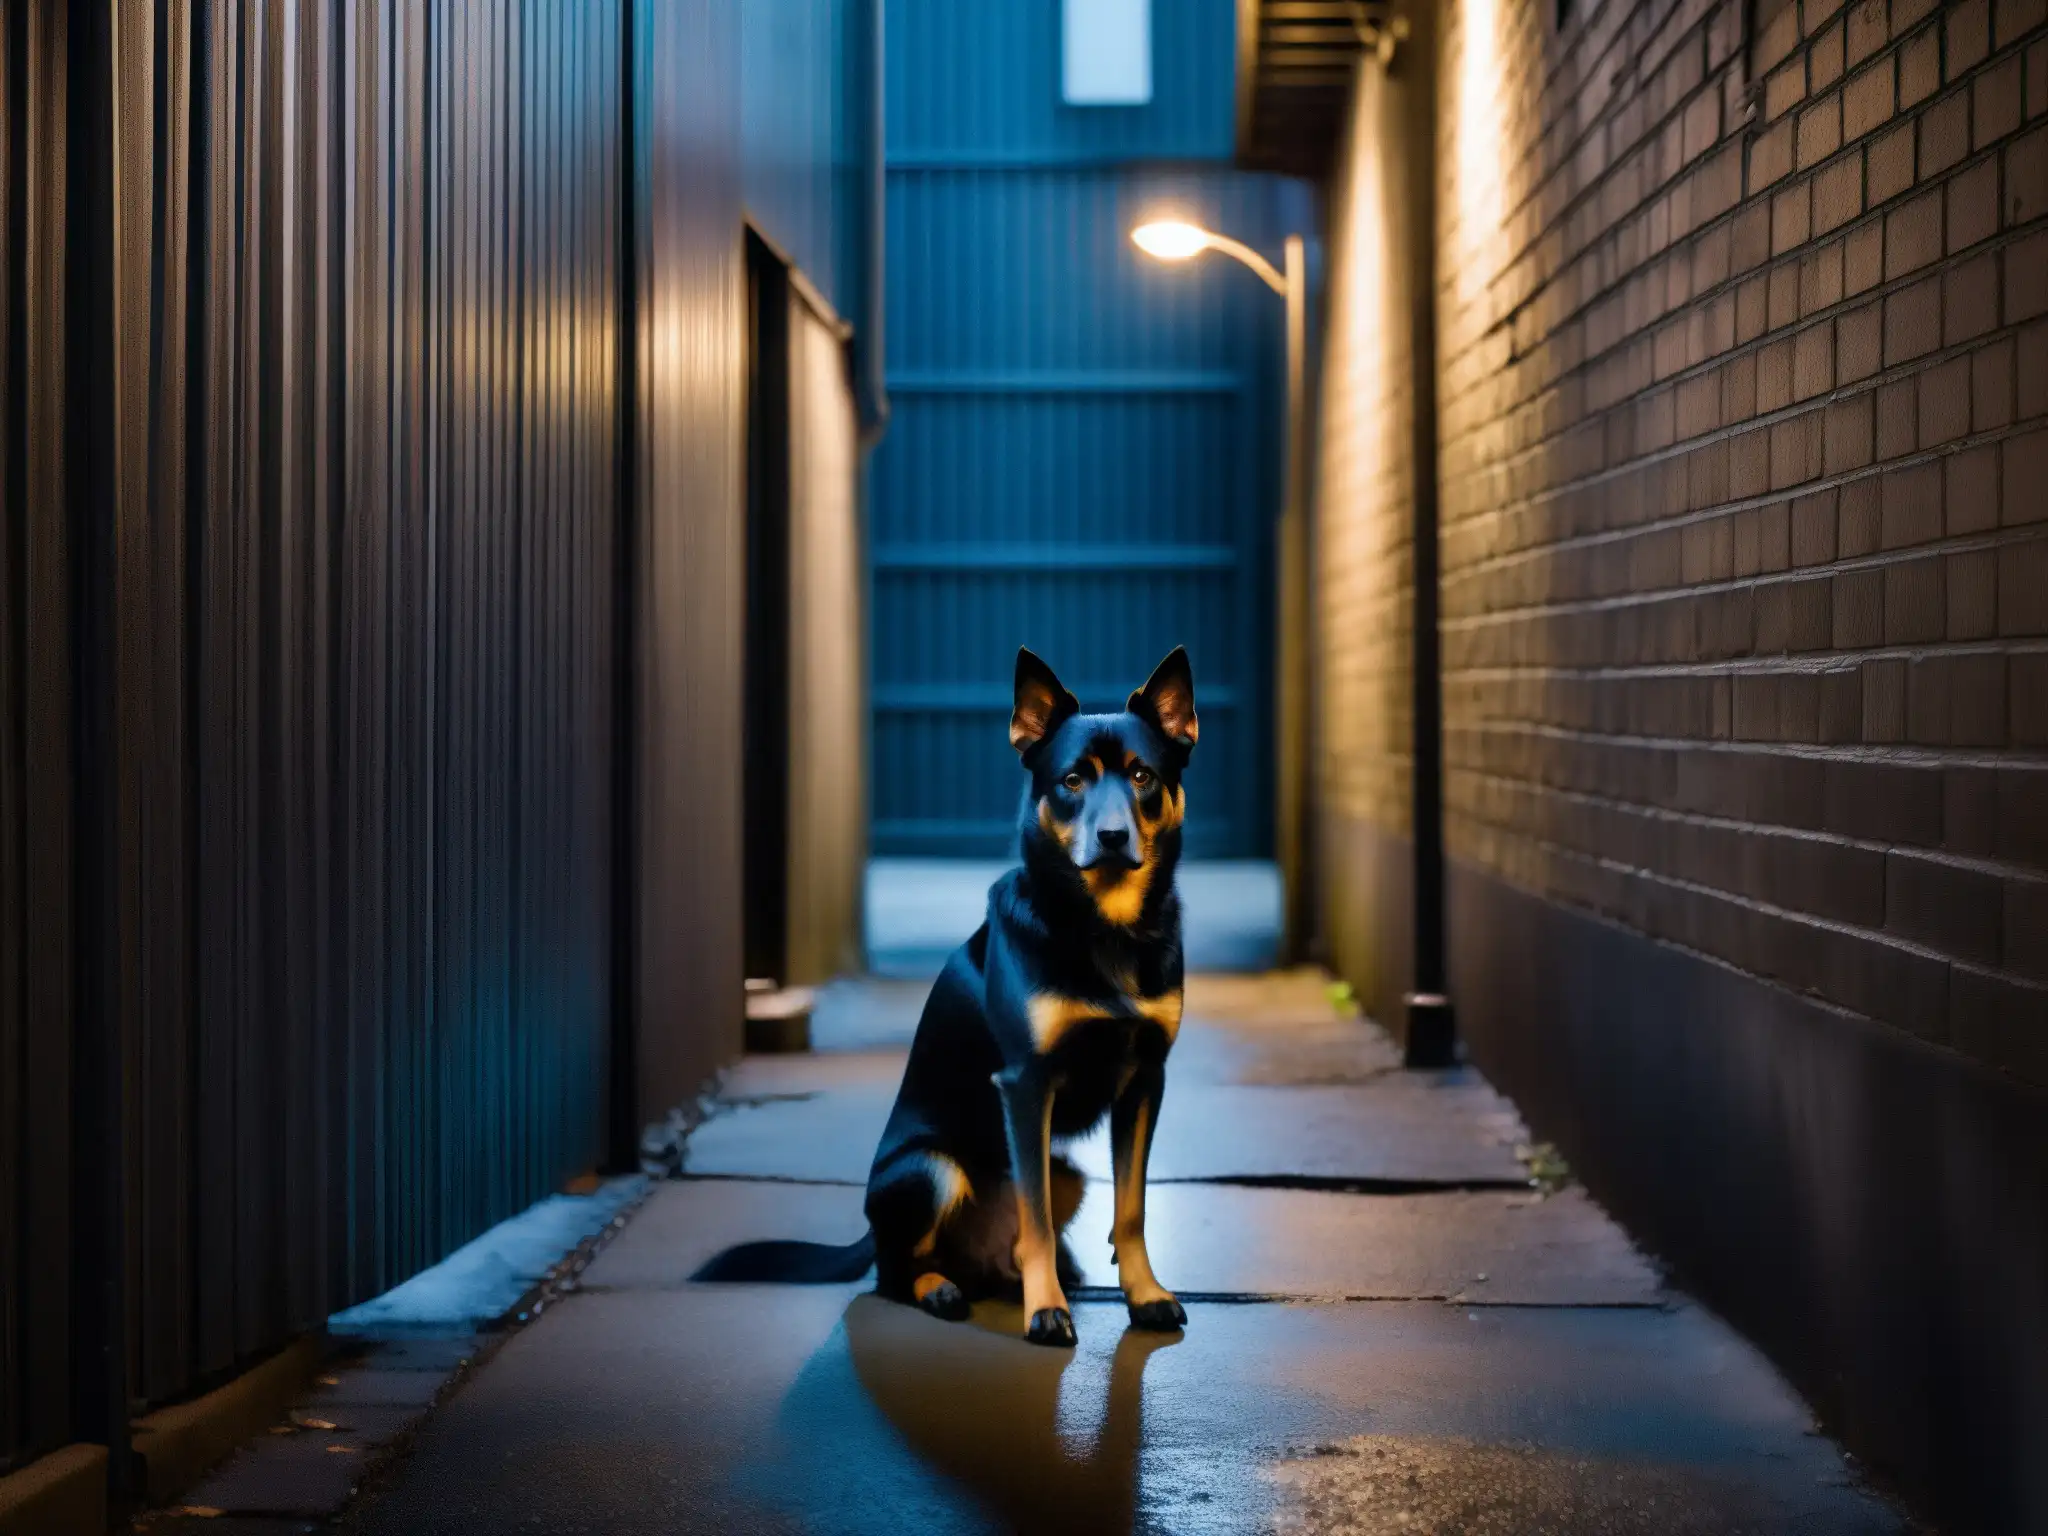 Un callejón sombrío con un solitario perro negro, creando una atmósfera inquietante